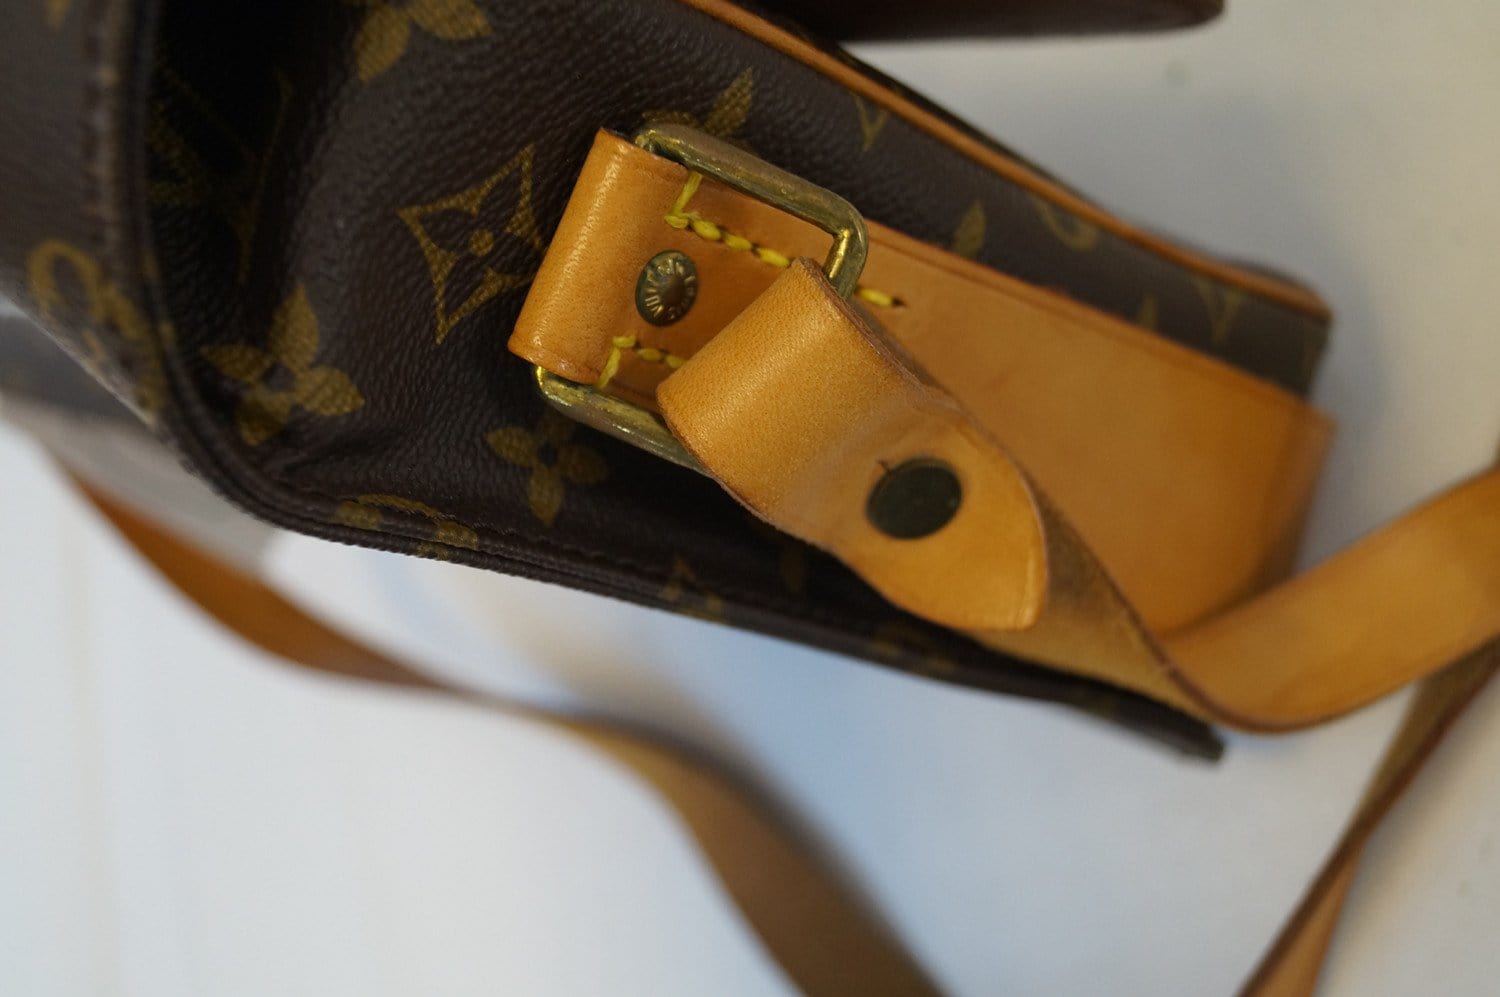 Louis Vuitton Cartouchière GM shoulder bag in brown canvas and